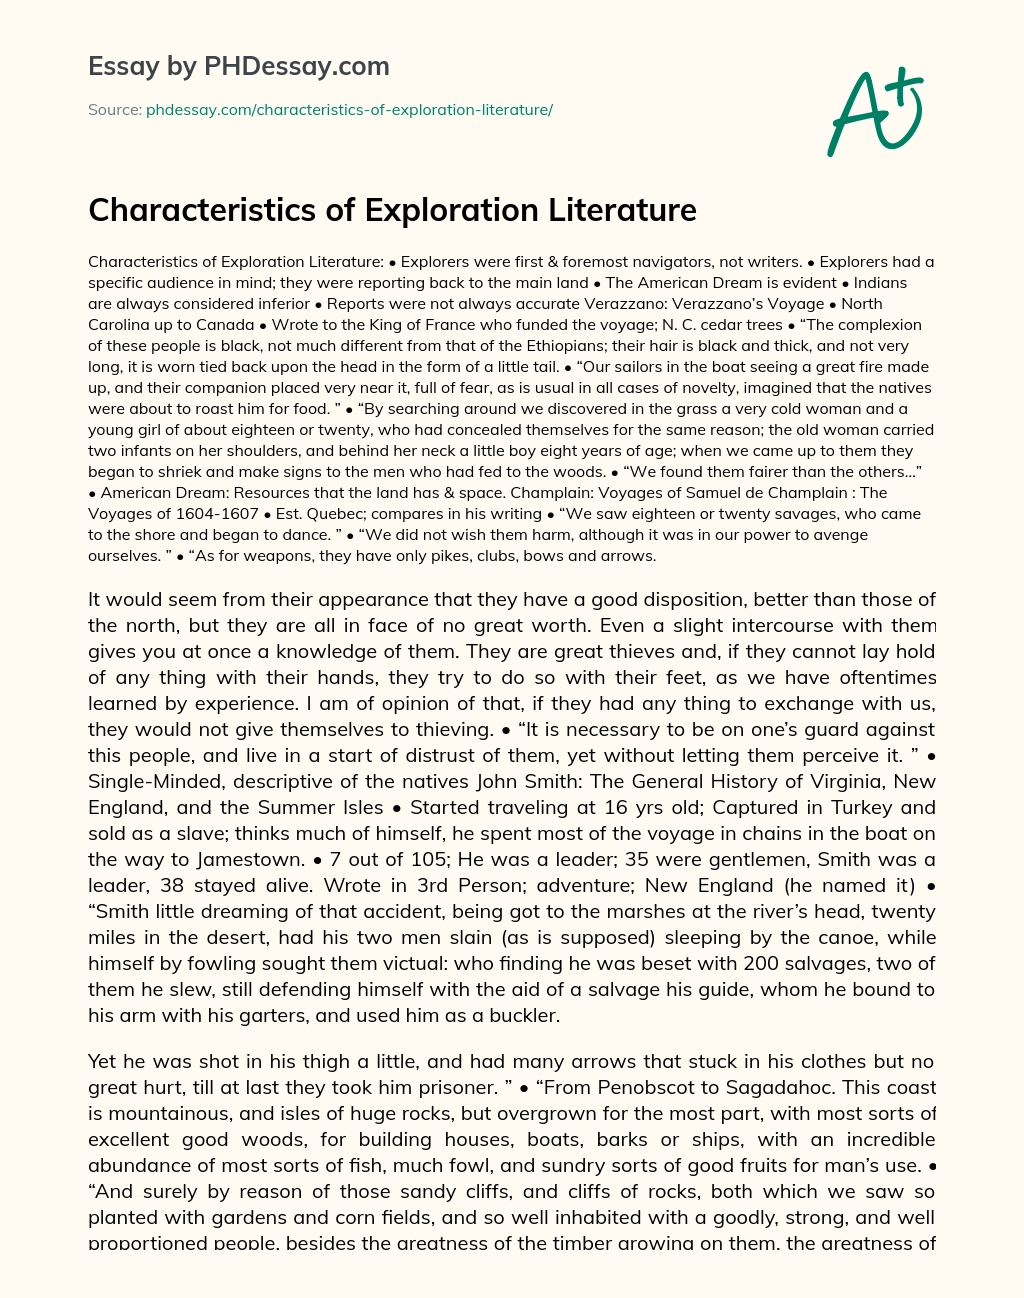 Characteristics of Exploration Literature essay